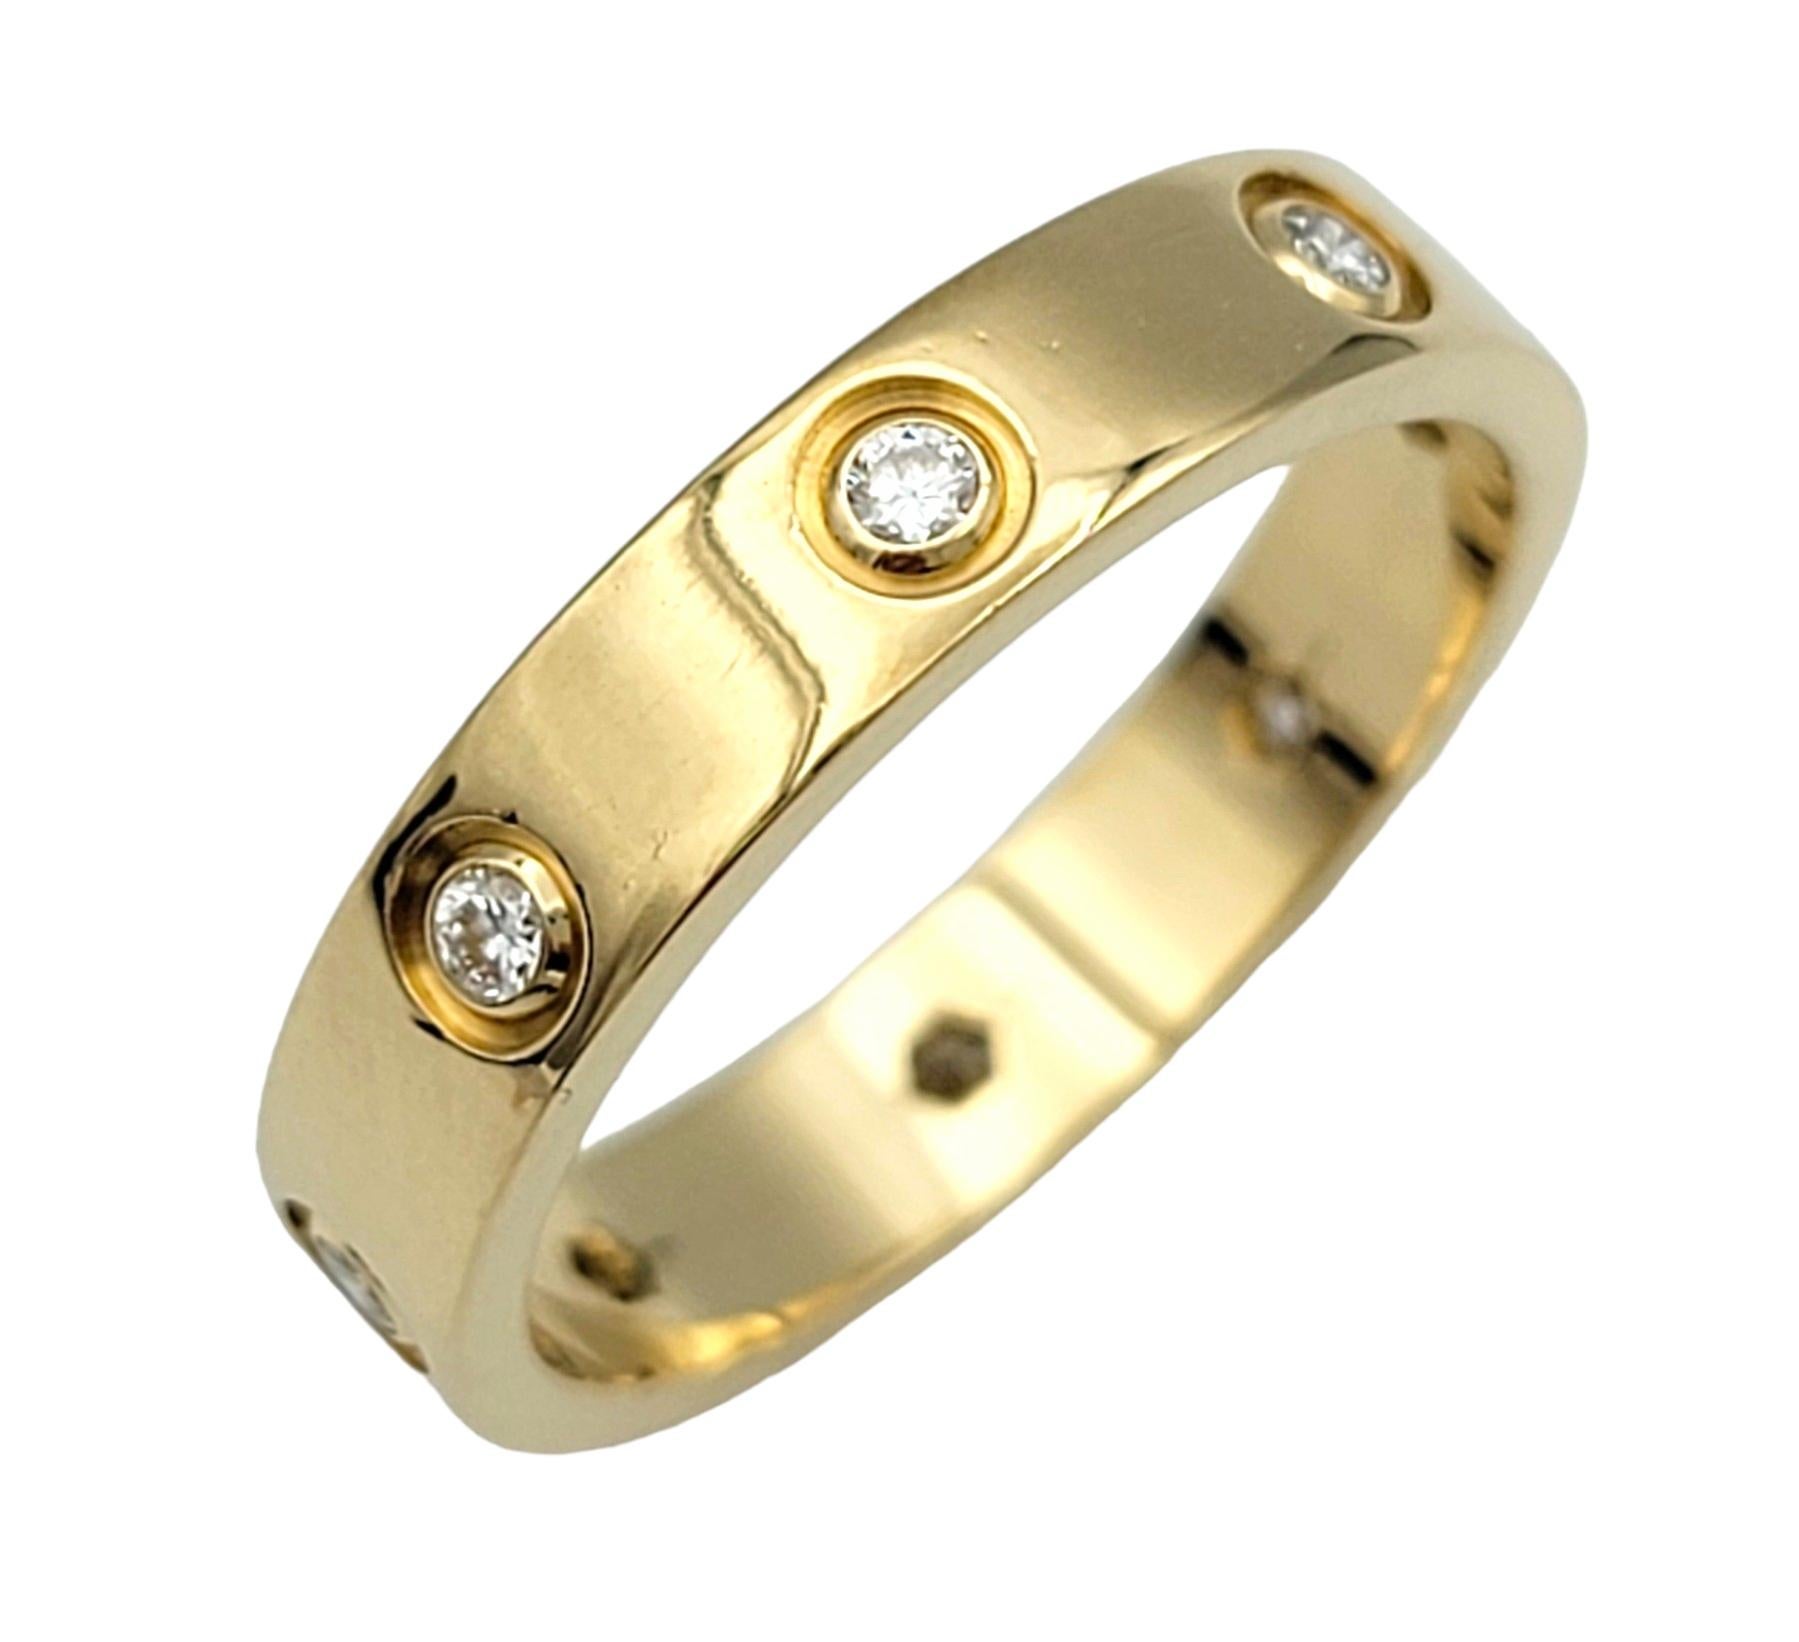 Ringgröße: 6.75

Dieser wunderschöne, mit Diamanten besetzte Ring von Cartier Love ist ein ikonisches Symbol für dauerhafte Liebe und zeitlose Eleganz. Dieser von der renommierten Luxusmarke Cartier gefertigte Ring verkörpert Raffinesse und Luxus in